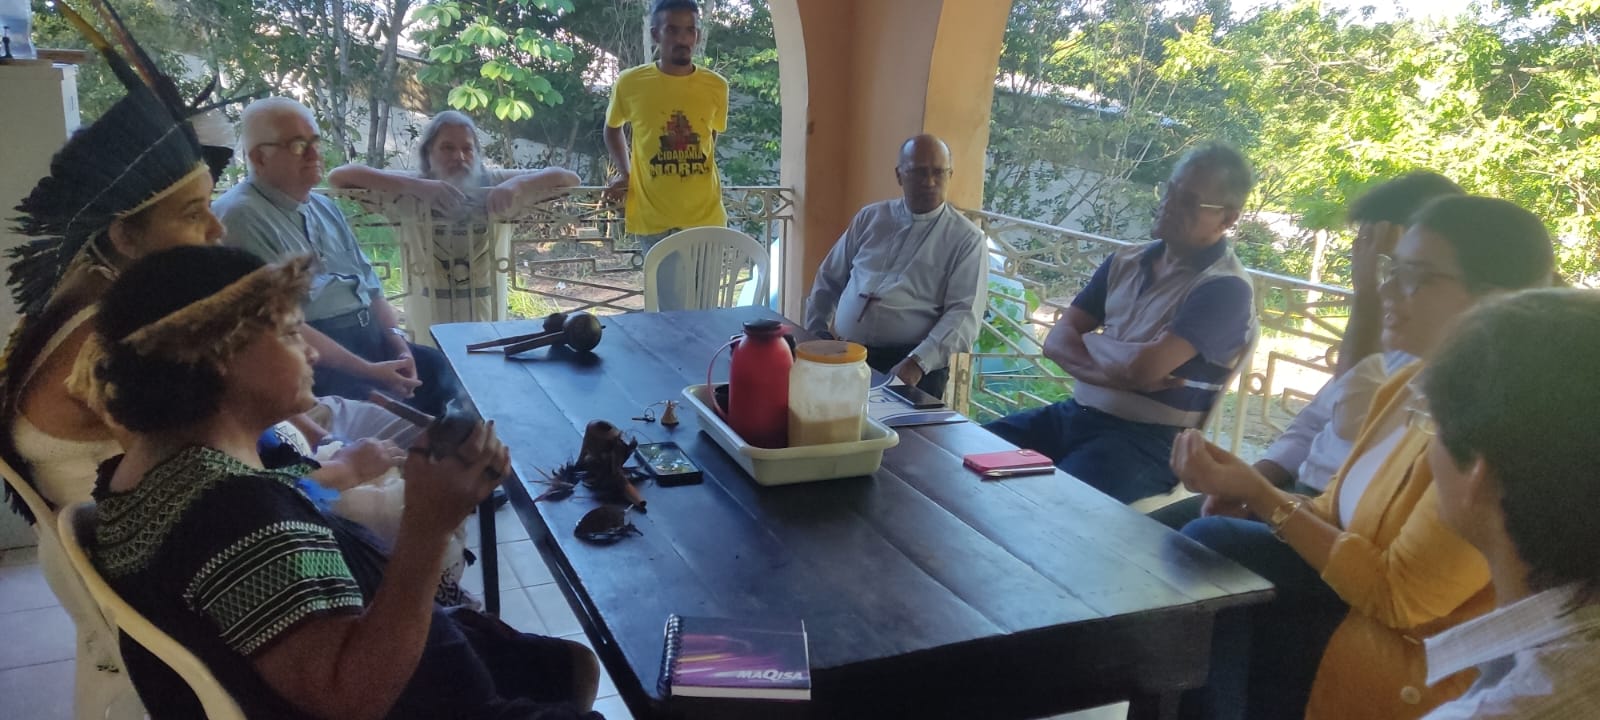 Dom Limacêdo Antonio participa de reunião com a Funai em área indígena no Grande Recife